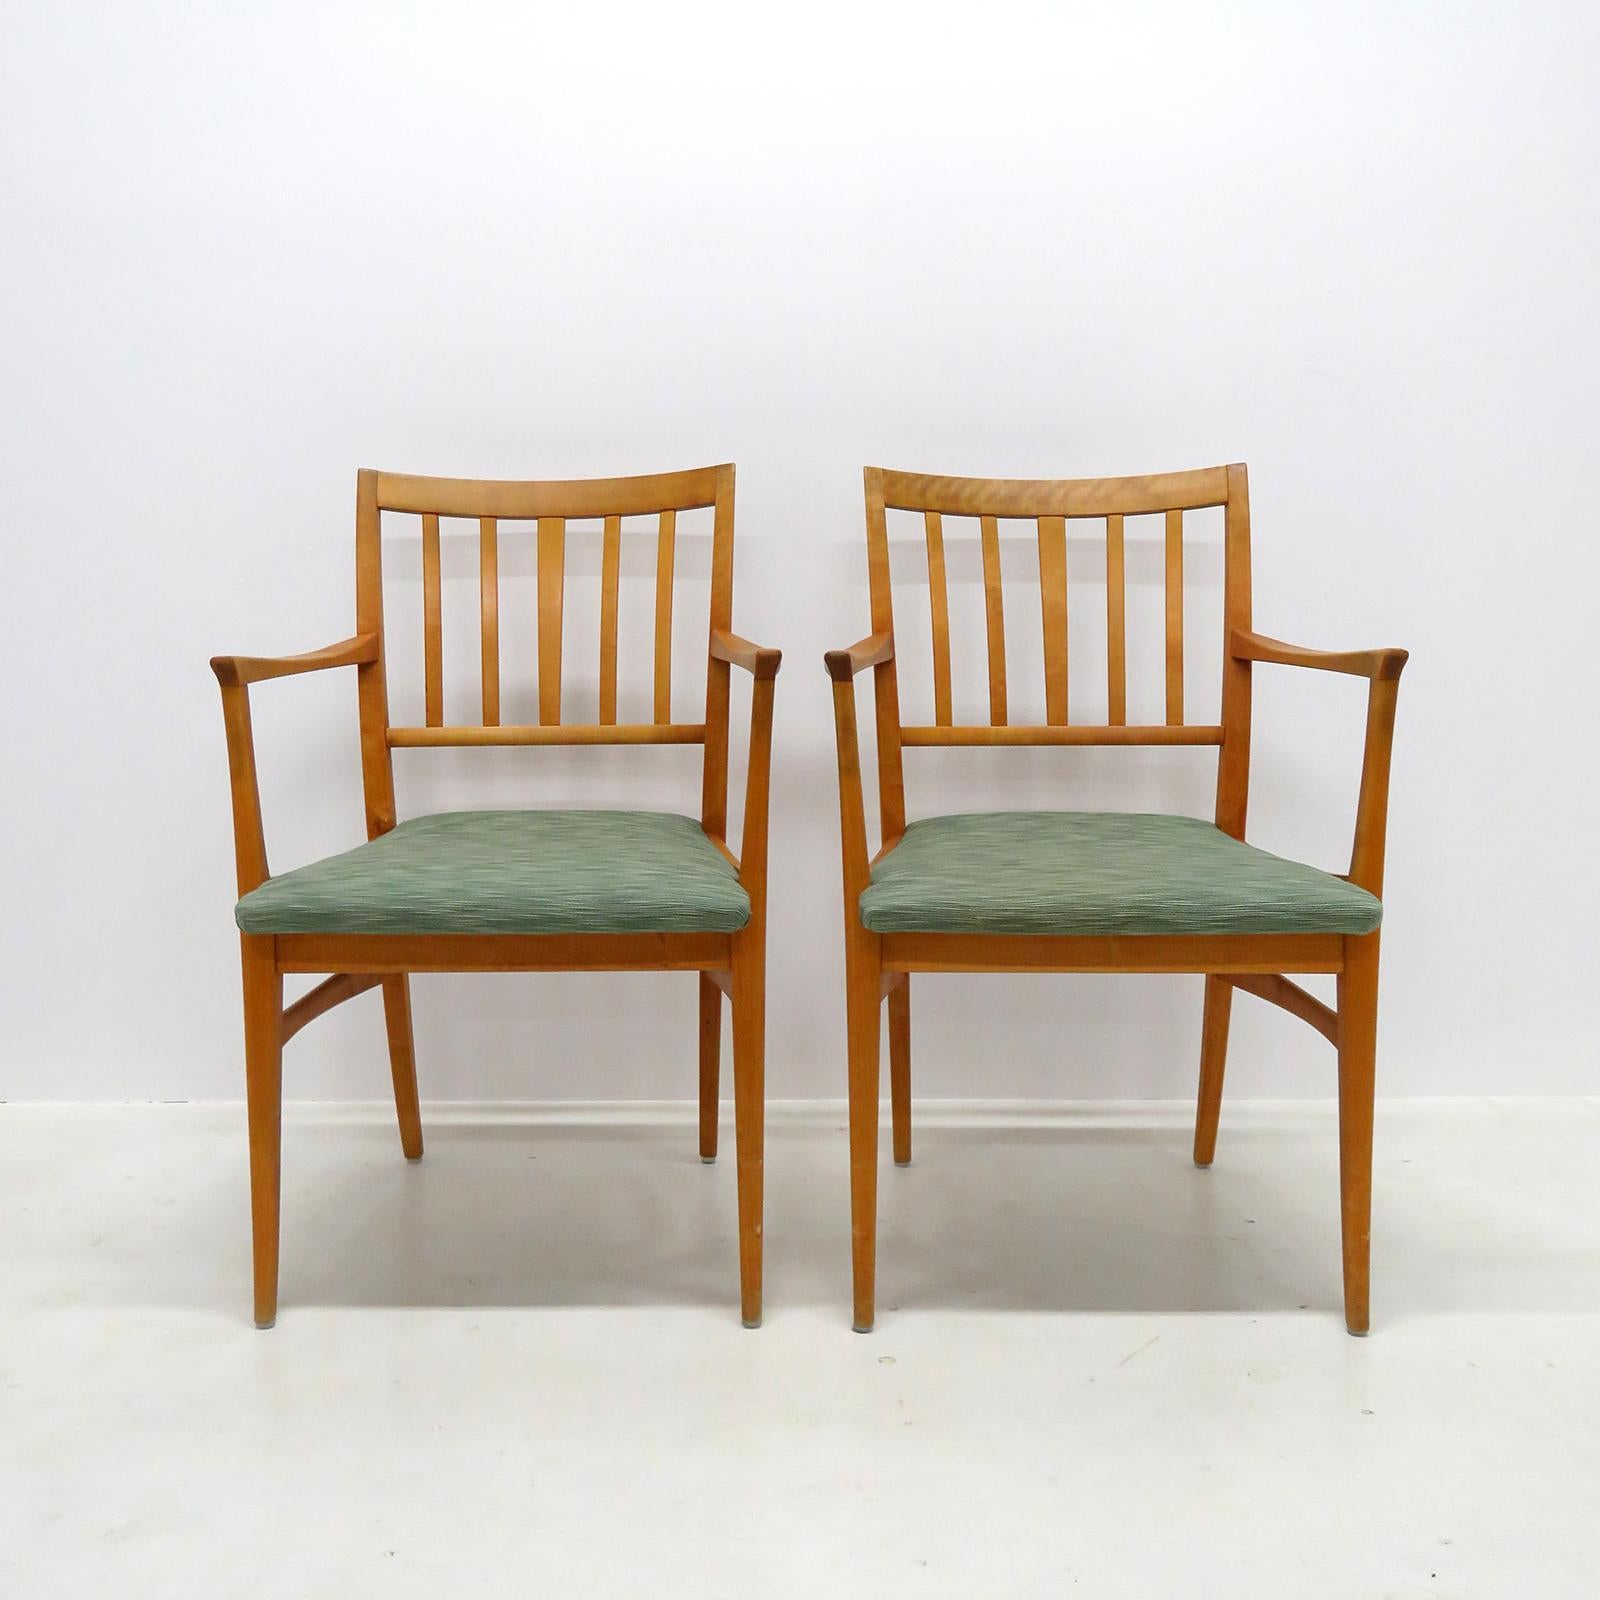 Merveilleux ensemble de six chaises de salle à manger en hêtre, par Carl Malmsten pour Waggeryds Möbelfabrik AB, Suède, 1950, toutes avec accoudoirs et sièges rembourrés.